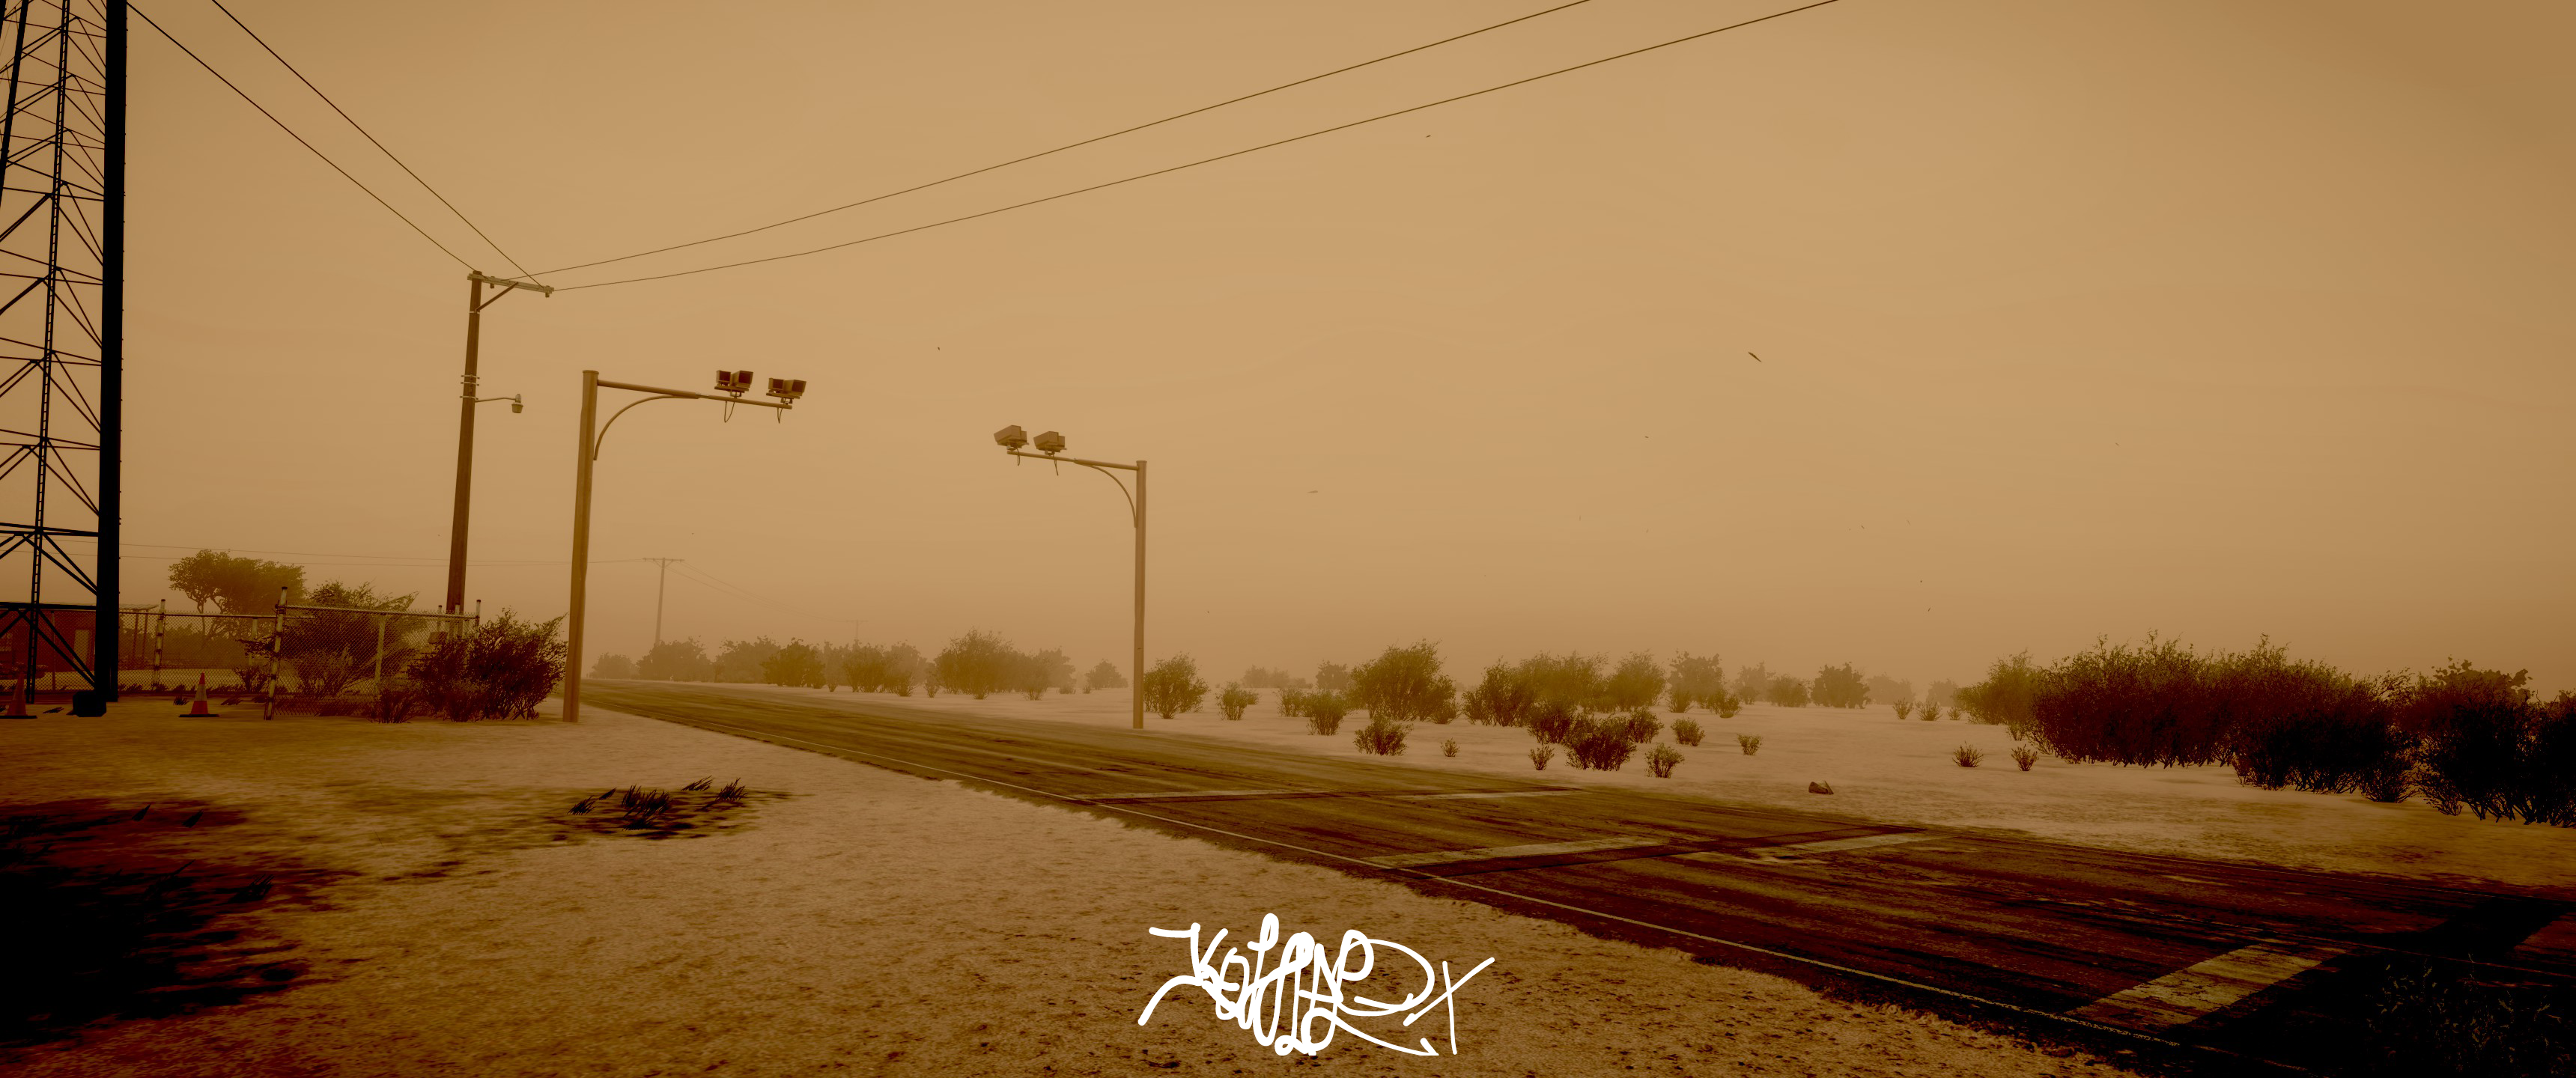 Zarude sandstorm by Sabertoothfoxy on DeviantArt